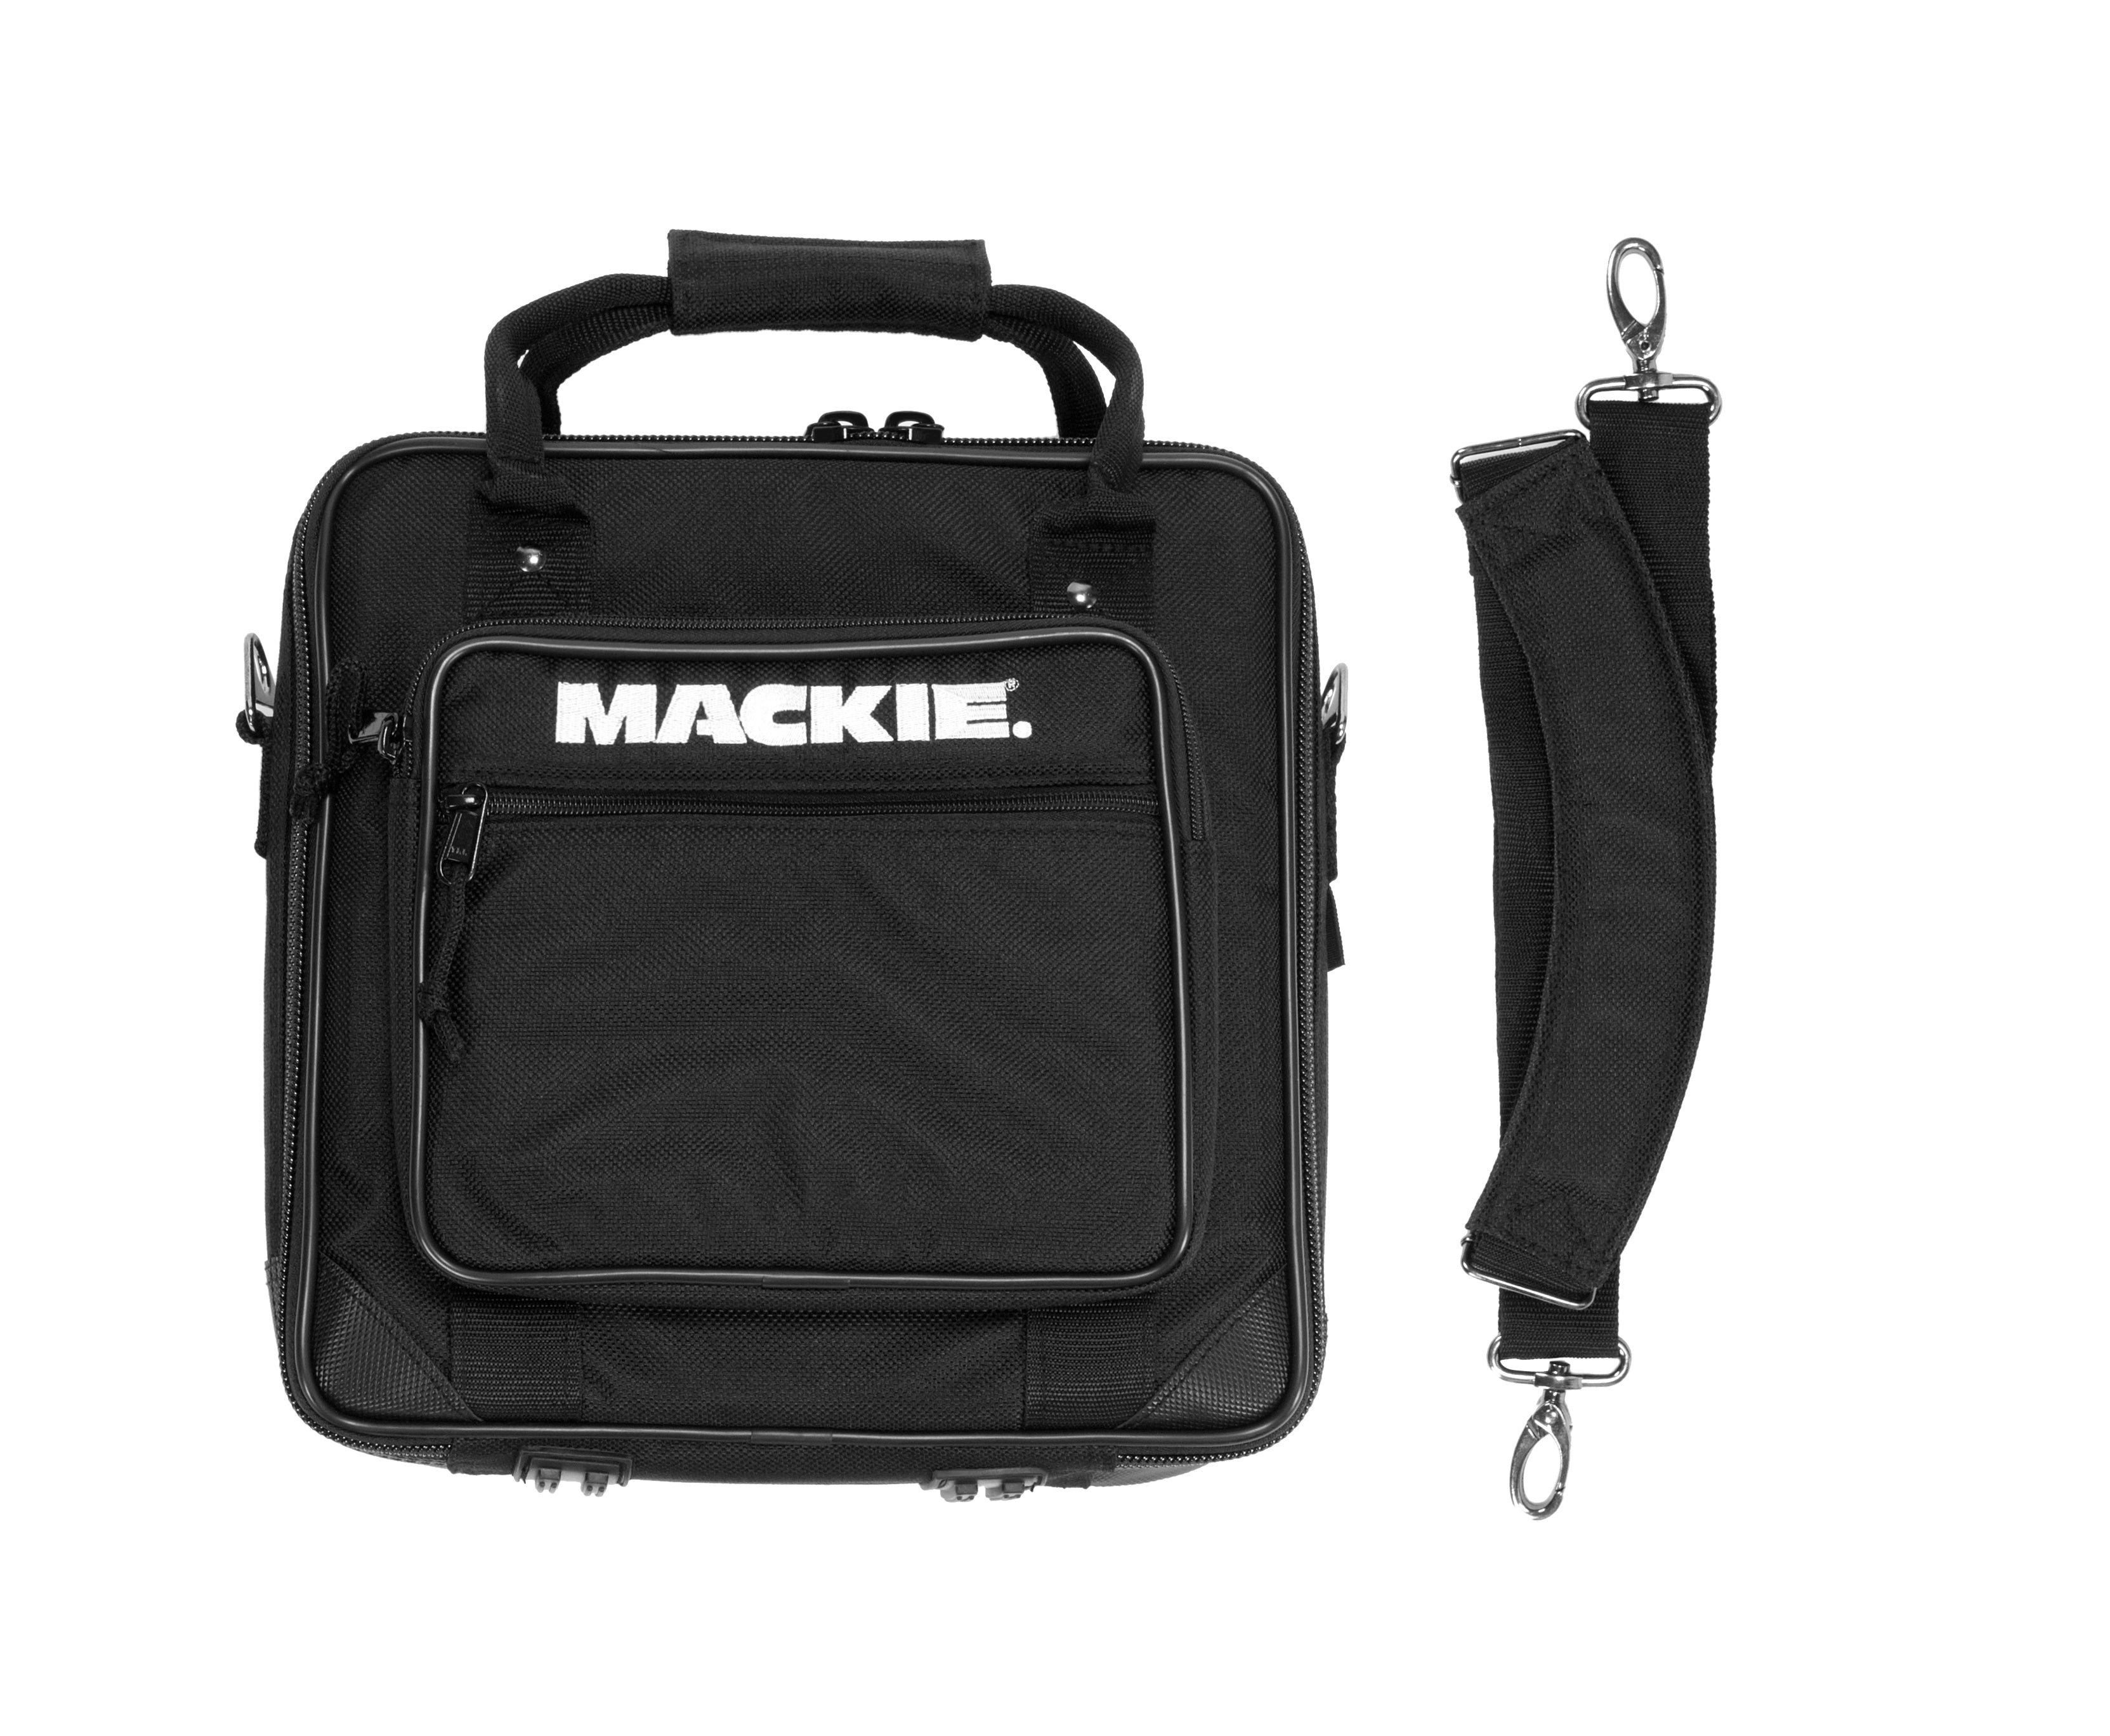 Mackie 1202VLZ Bag Mixer Bag for 1202VLZ4, VLZ3 and VLZ Pro - Hollywood DJ